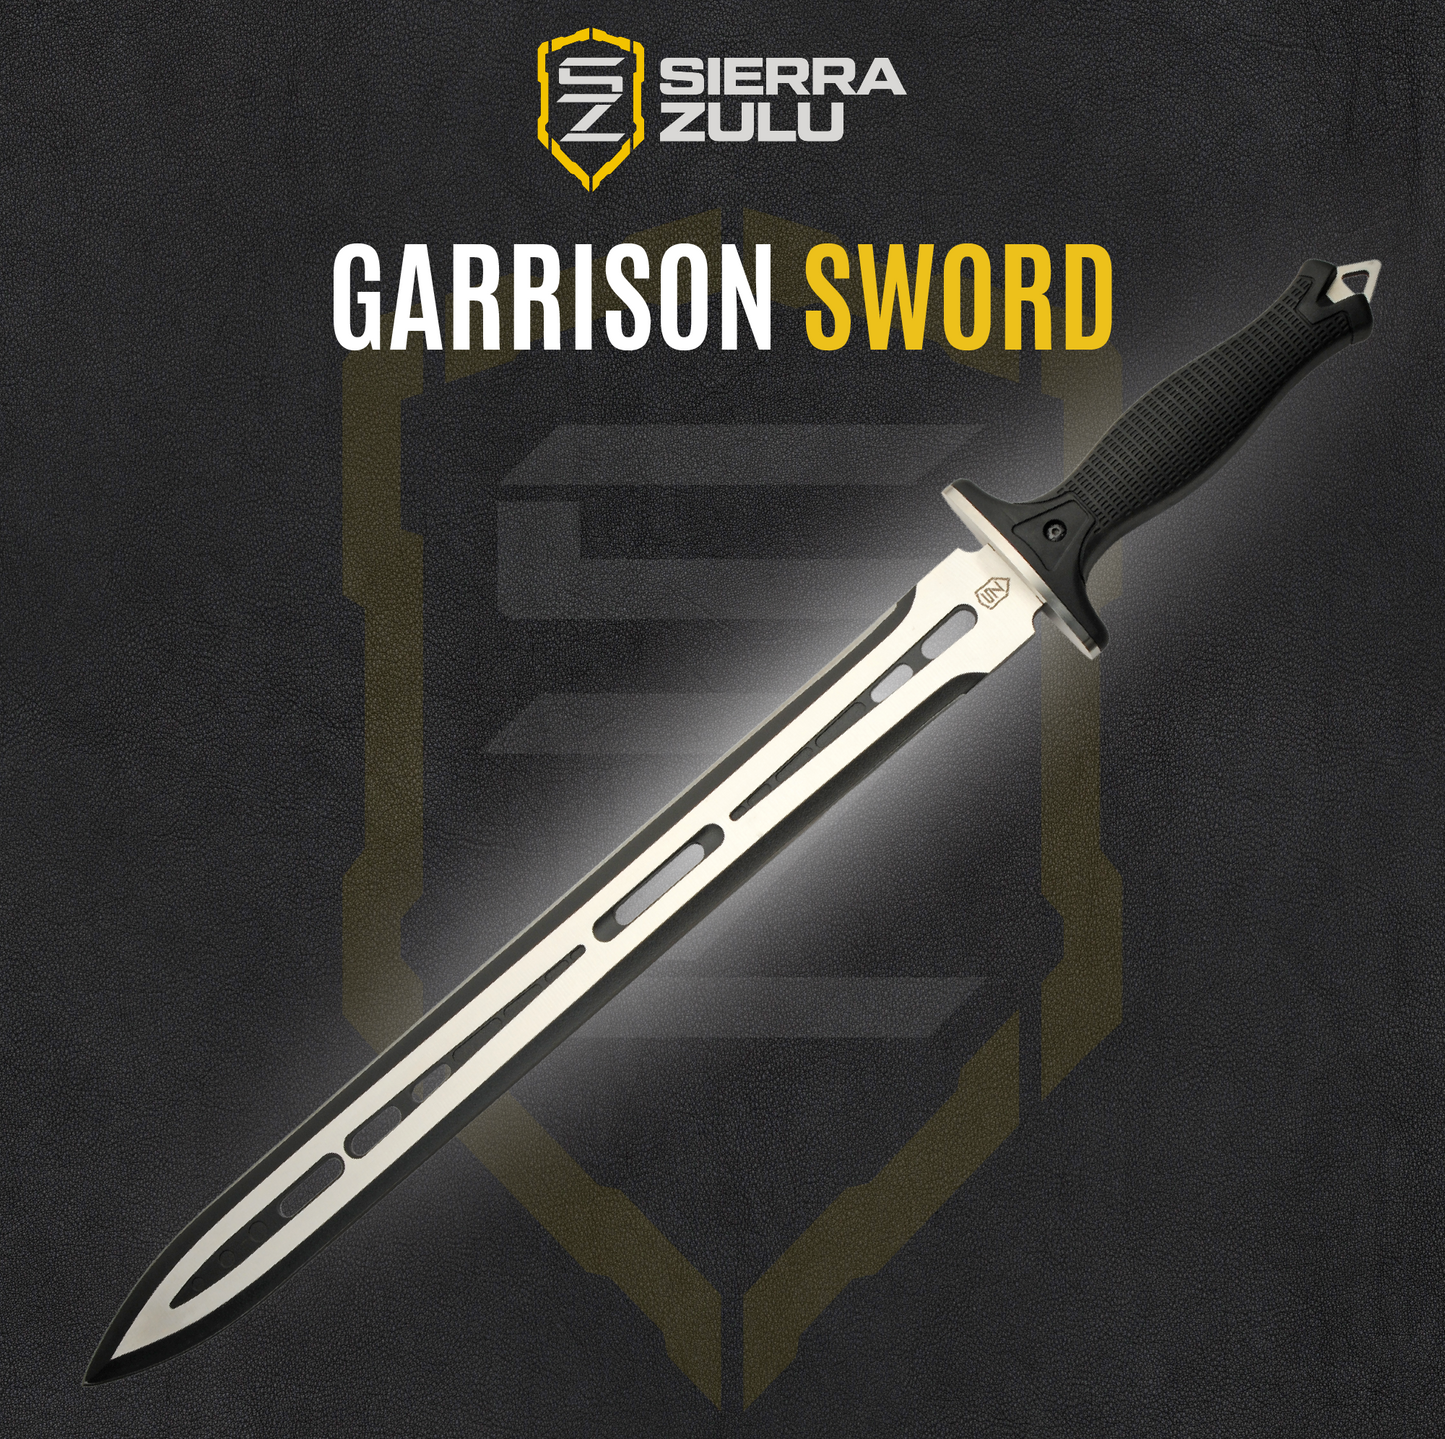 Sierra Zulu Garrison Sword